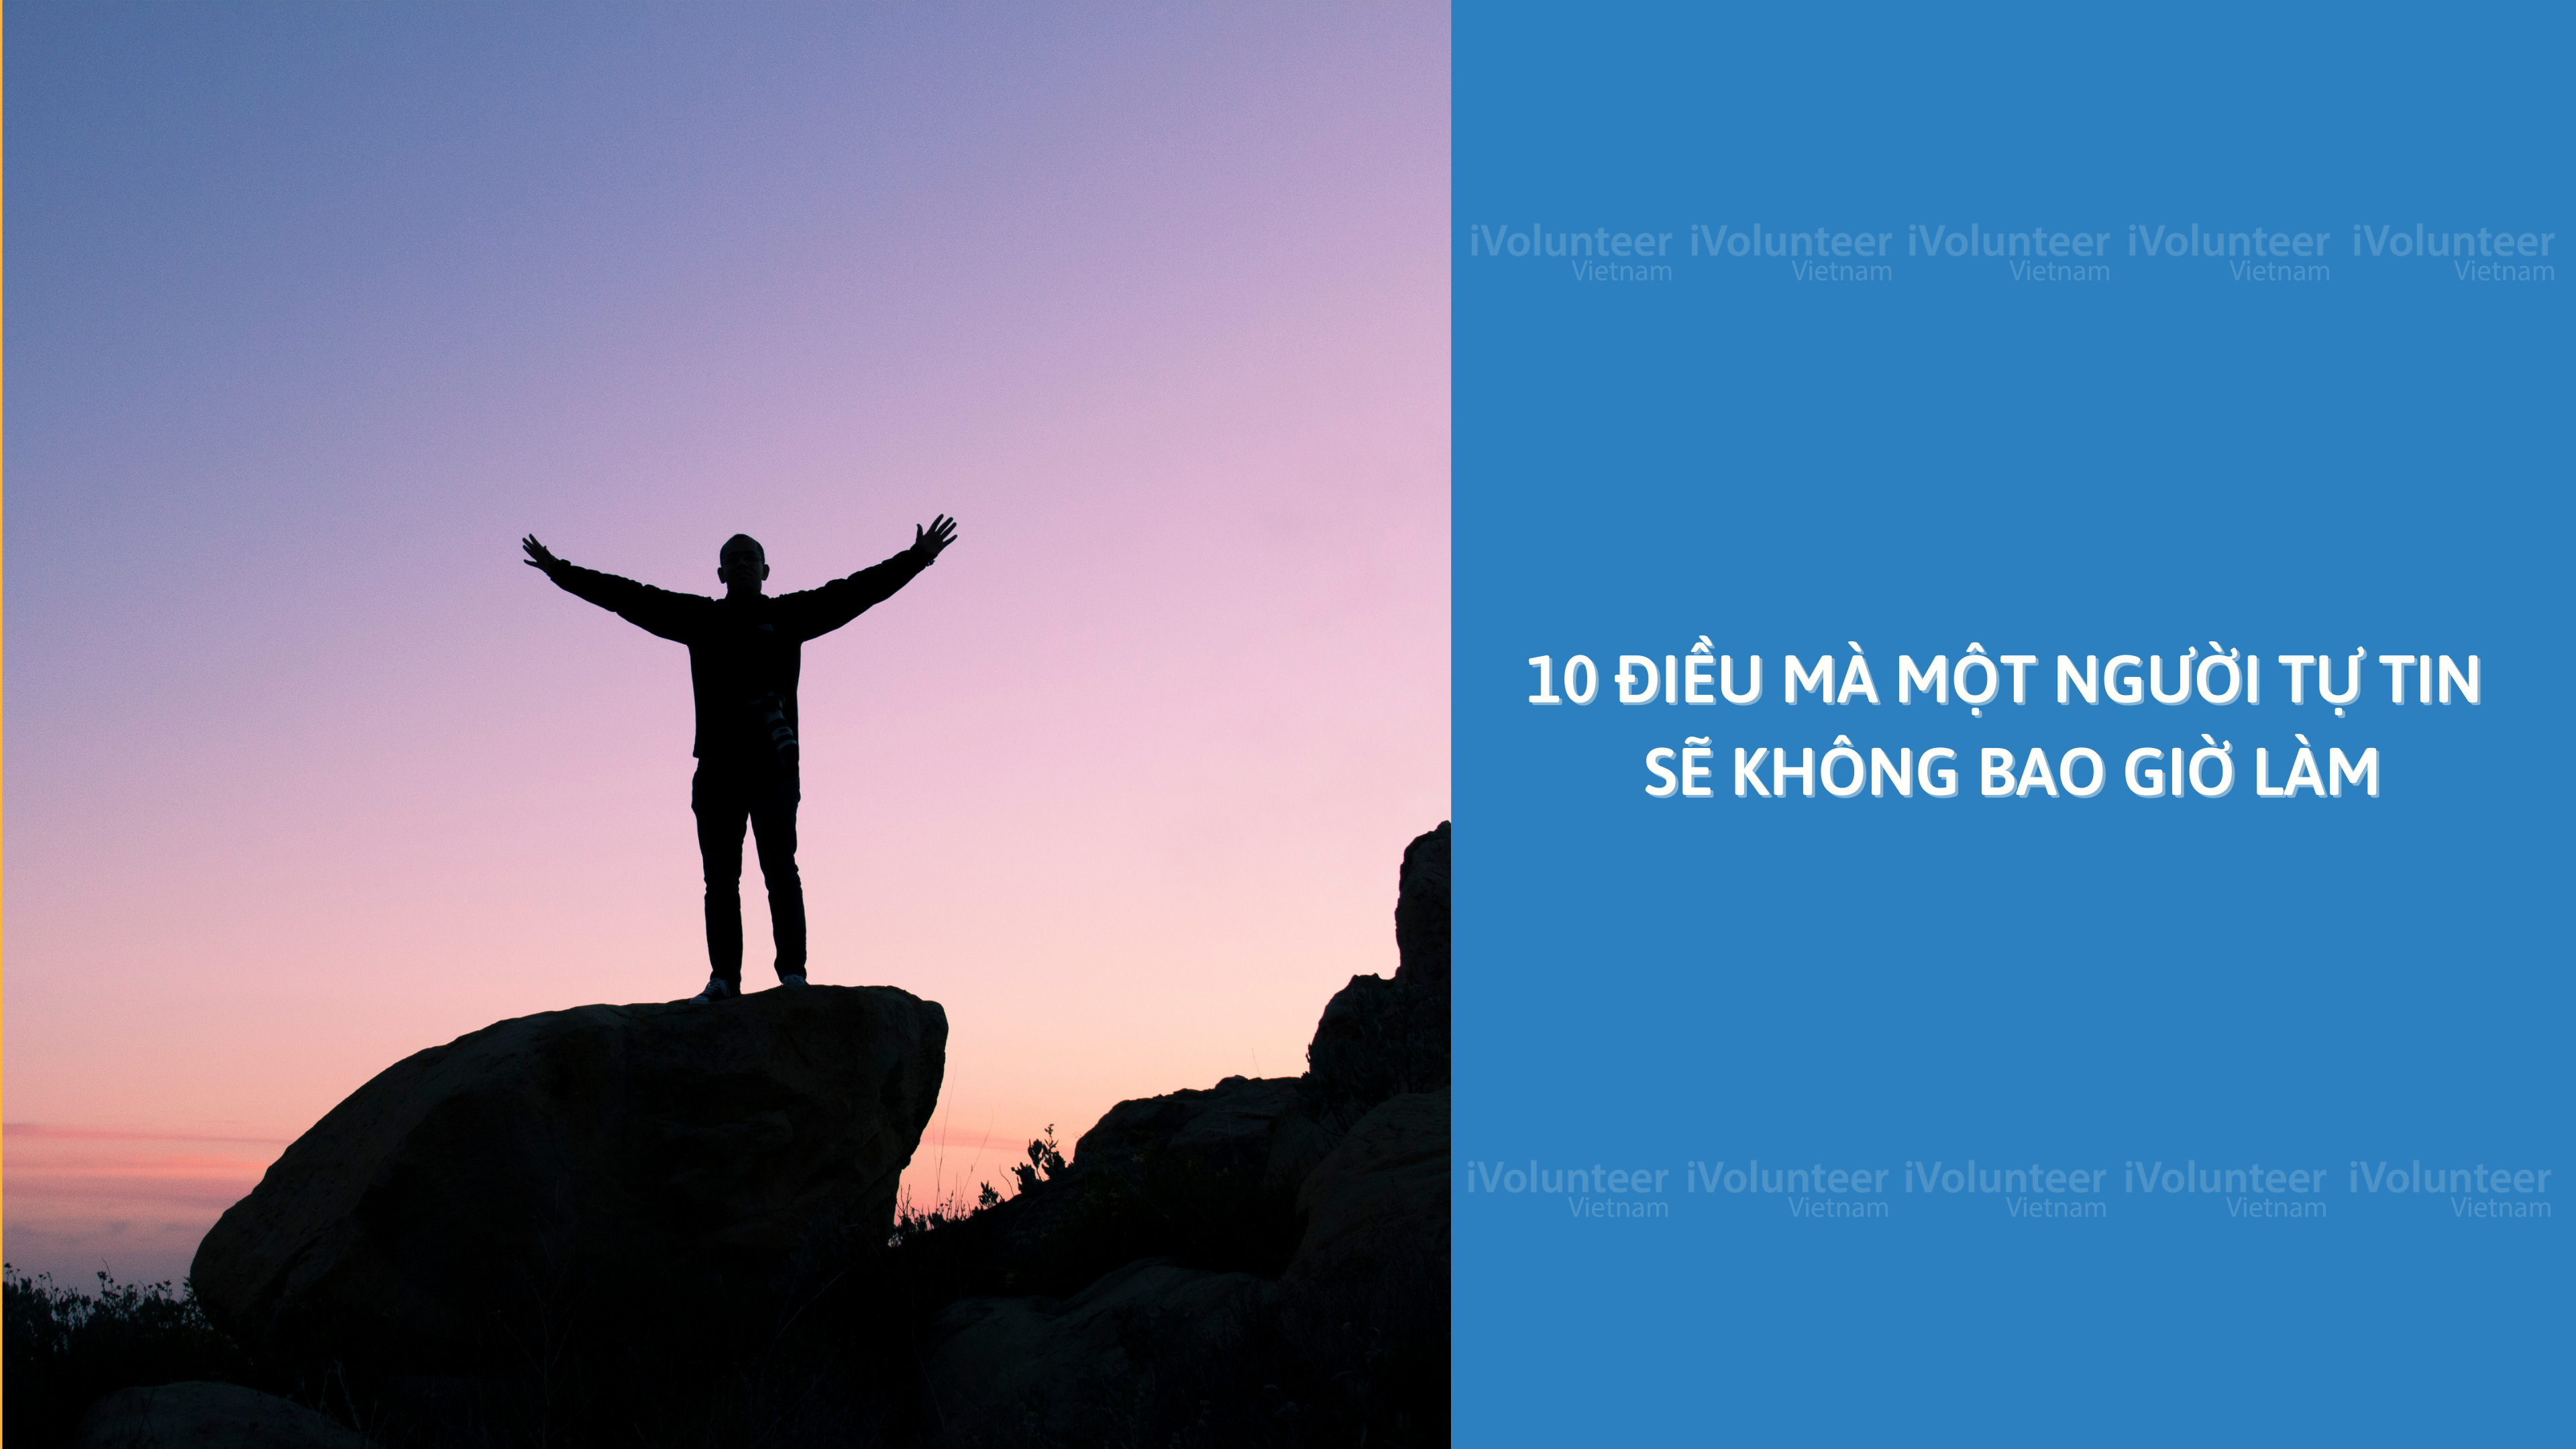 10 Điều Mà Một Người Tự Tin Sẽ Không Bao Giờ Làm